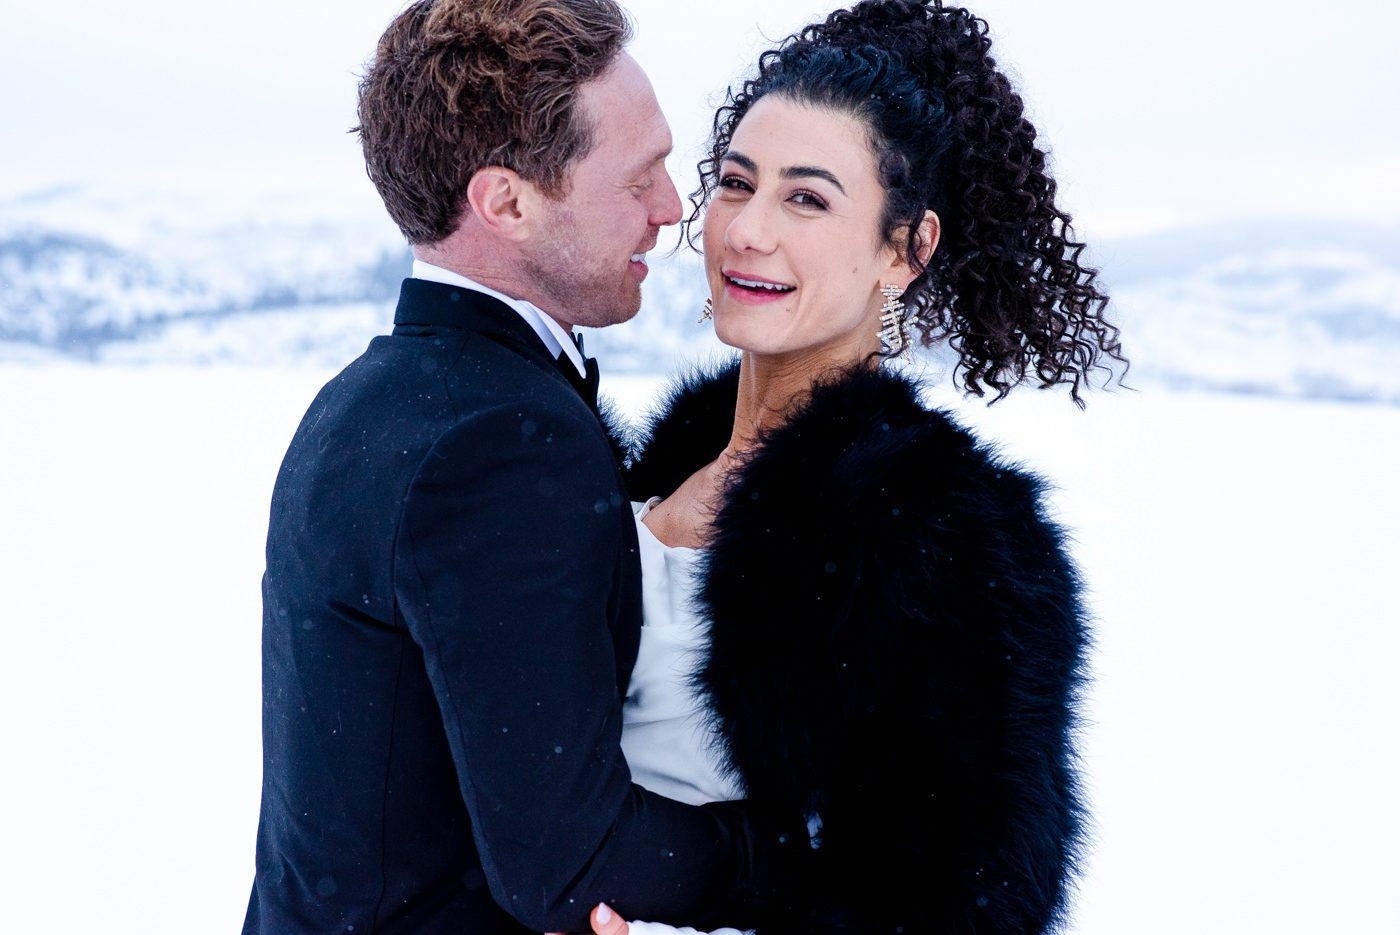 Wedding-Couple-portrait-in-snowy-field